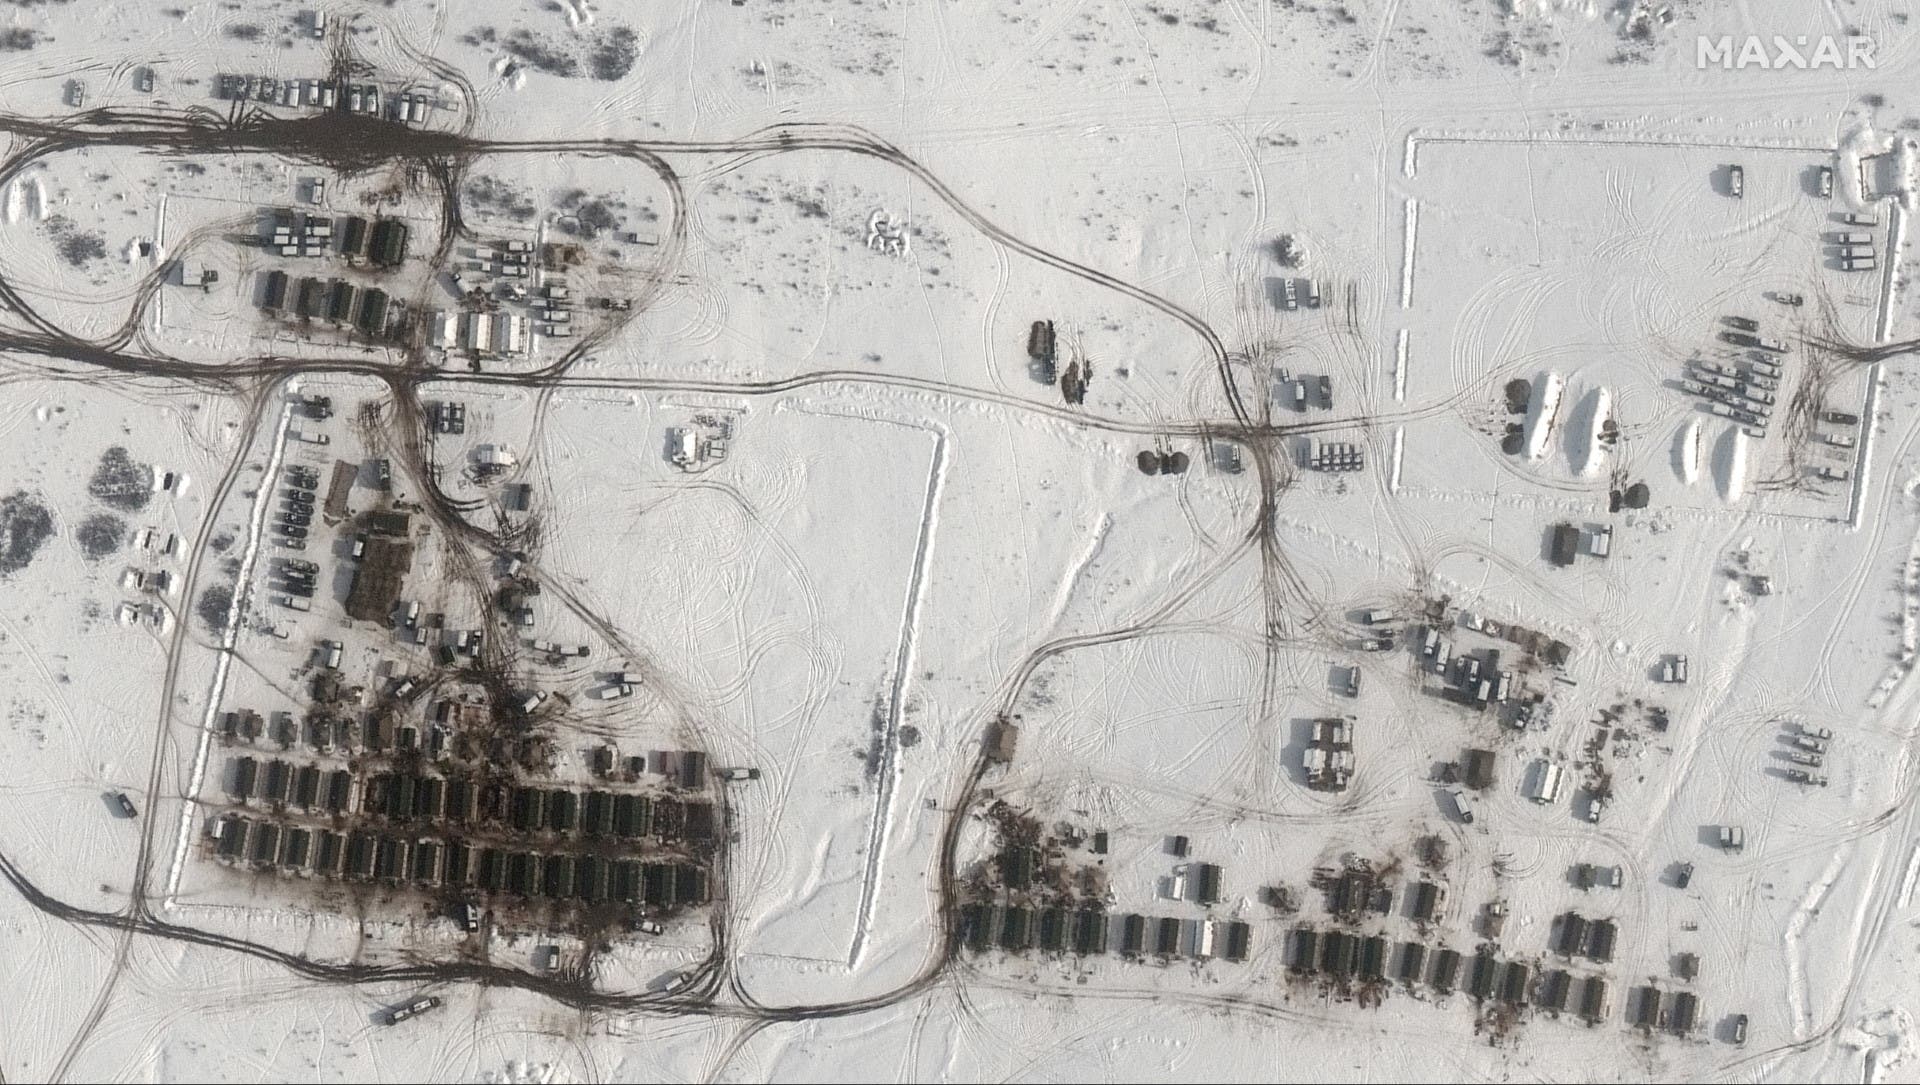 صورة مأخوذة بواسطة الأقمار الصناعية تظهر مجموعات قتالية روسية وخيام في شبه جزيرة القرم